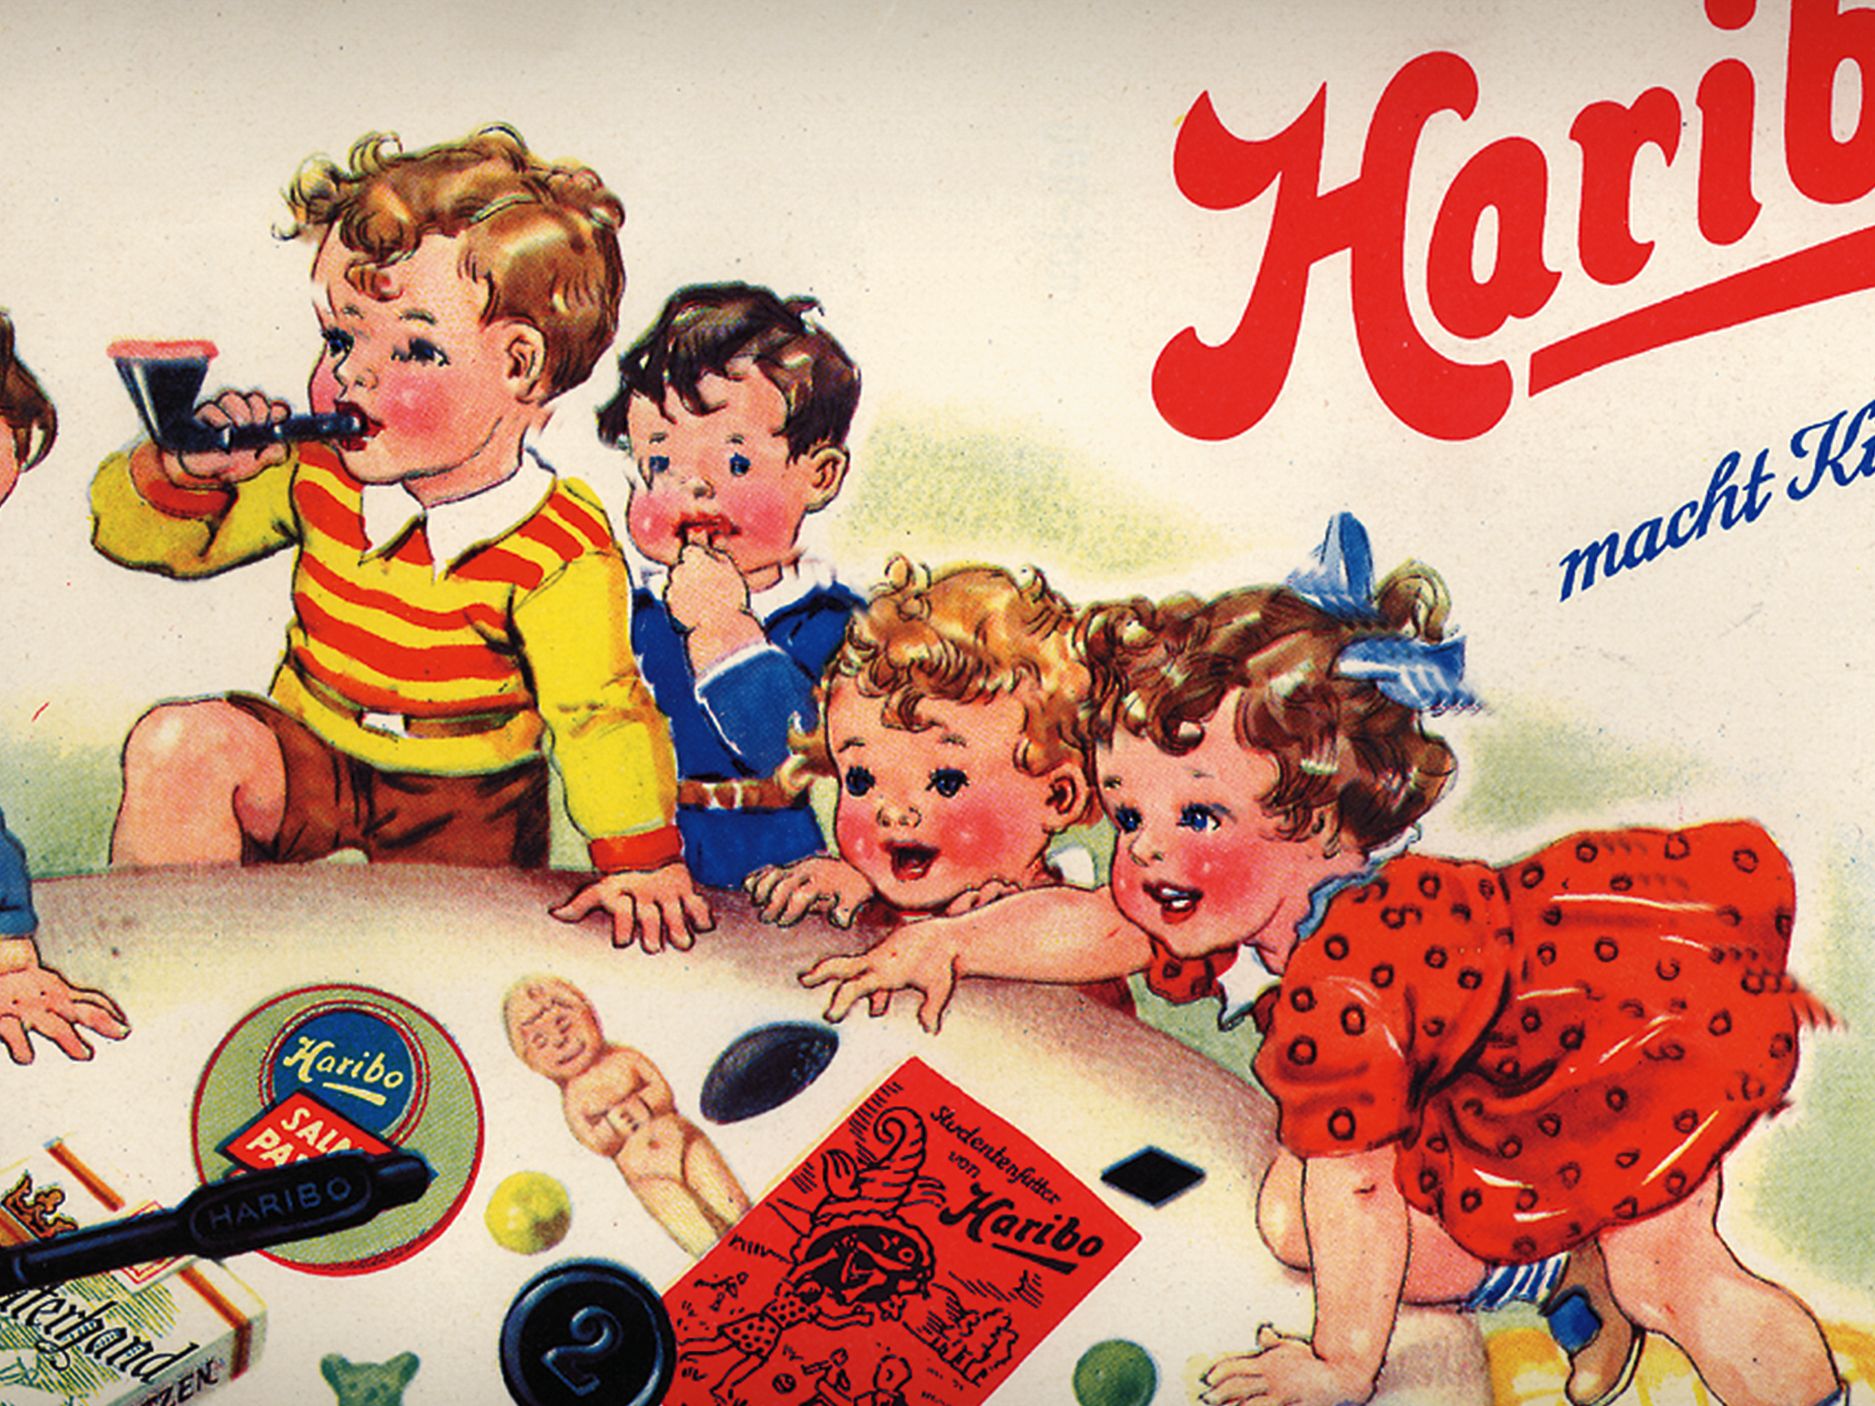 Oude advertentie van HARIBO, kinderen spelen met gummibeertjes en drop